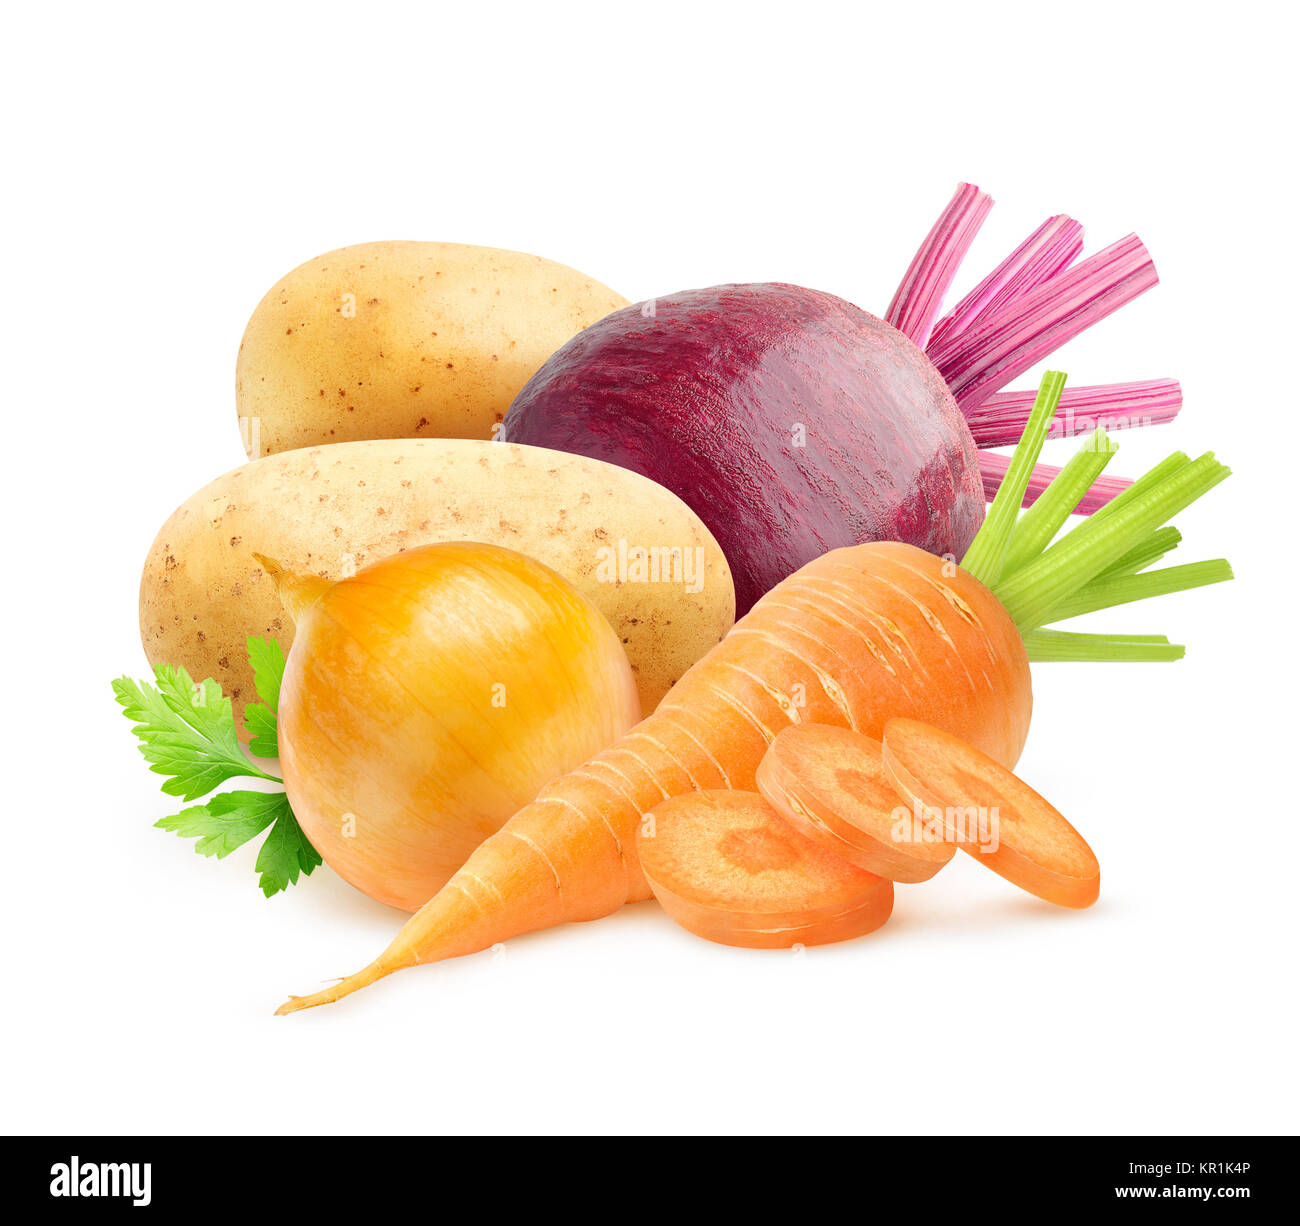 Verduras aislados. La zanahoria cruda, cebolla, patatas y remolachas aislado sobre fondo blanco con trazado de recorte Foto de stock